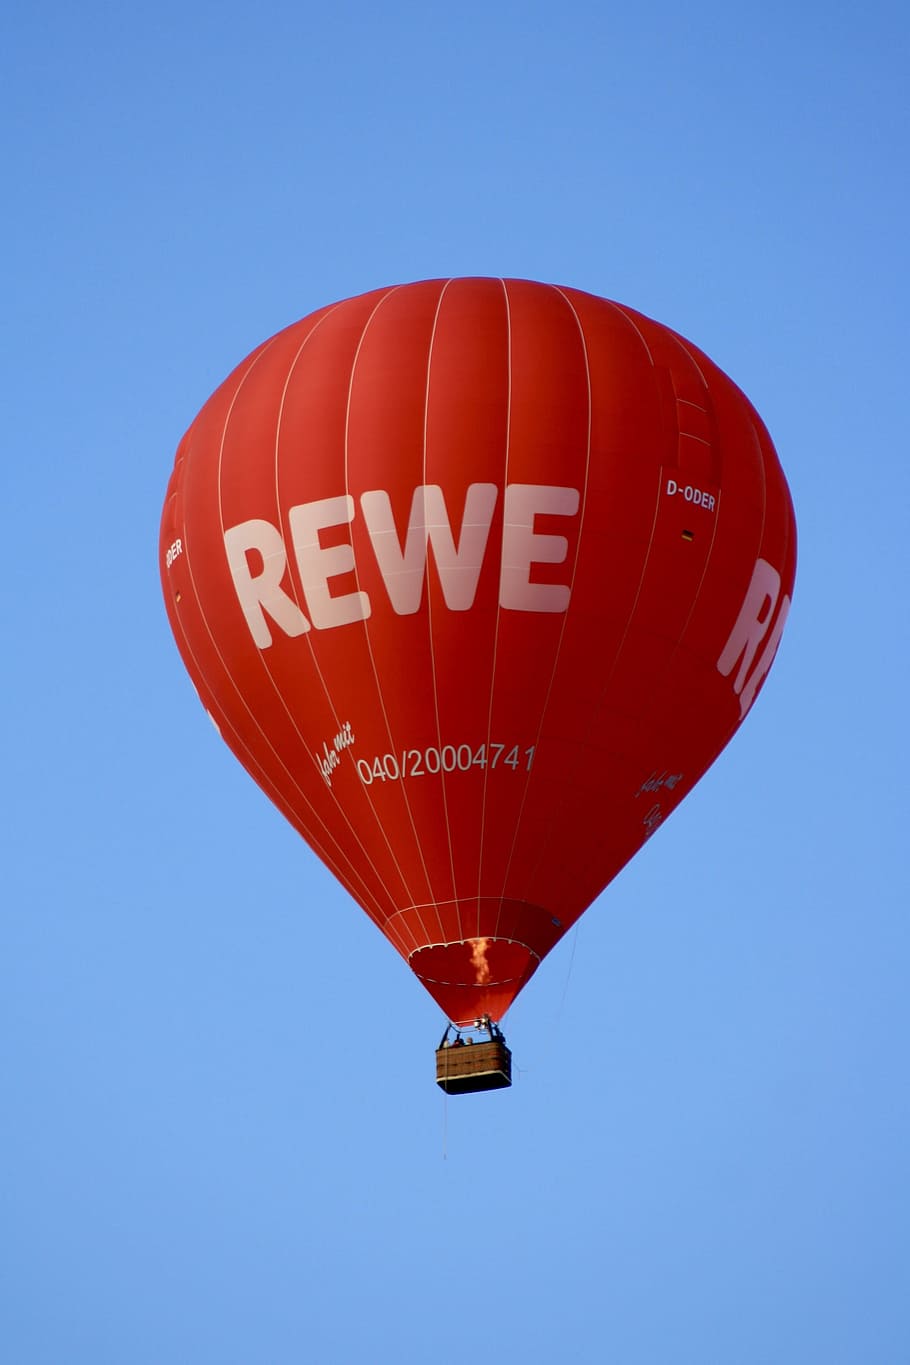 balloon, sky, hot air balloon rides, hot air balloon, red, rewe, blue, clear sky, air vehicle, mid-air